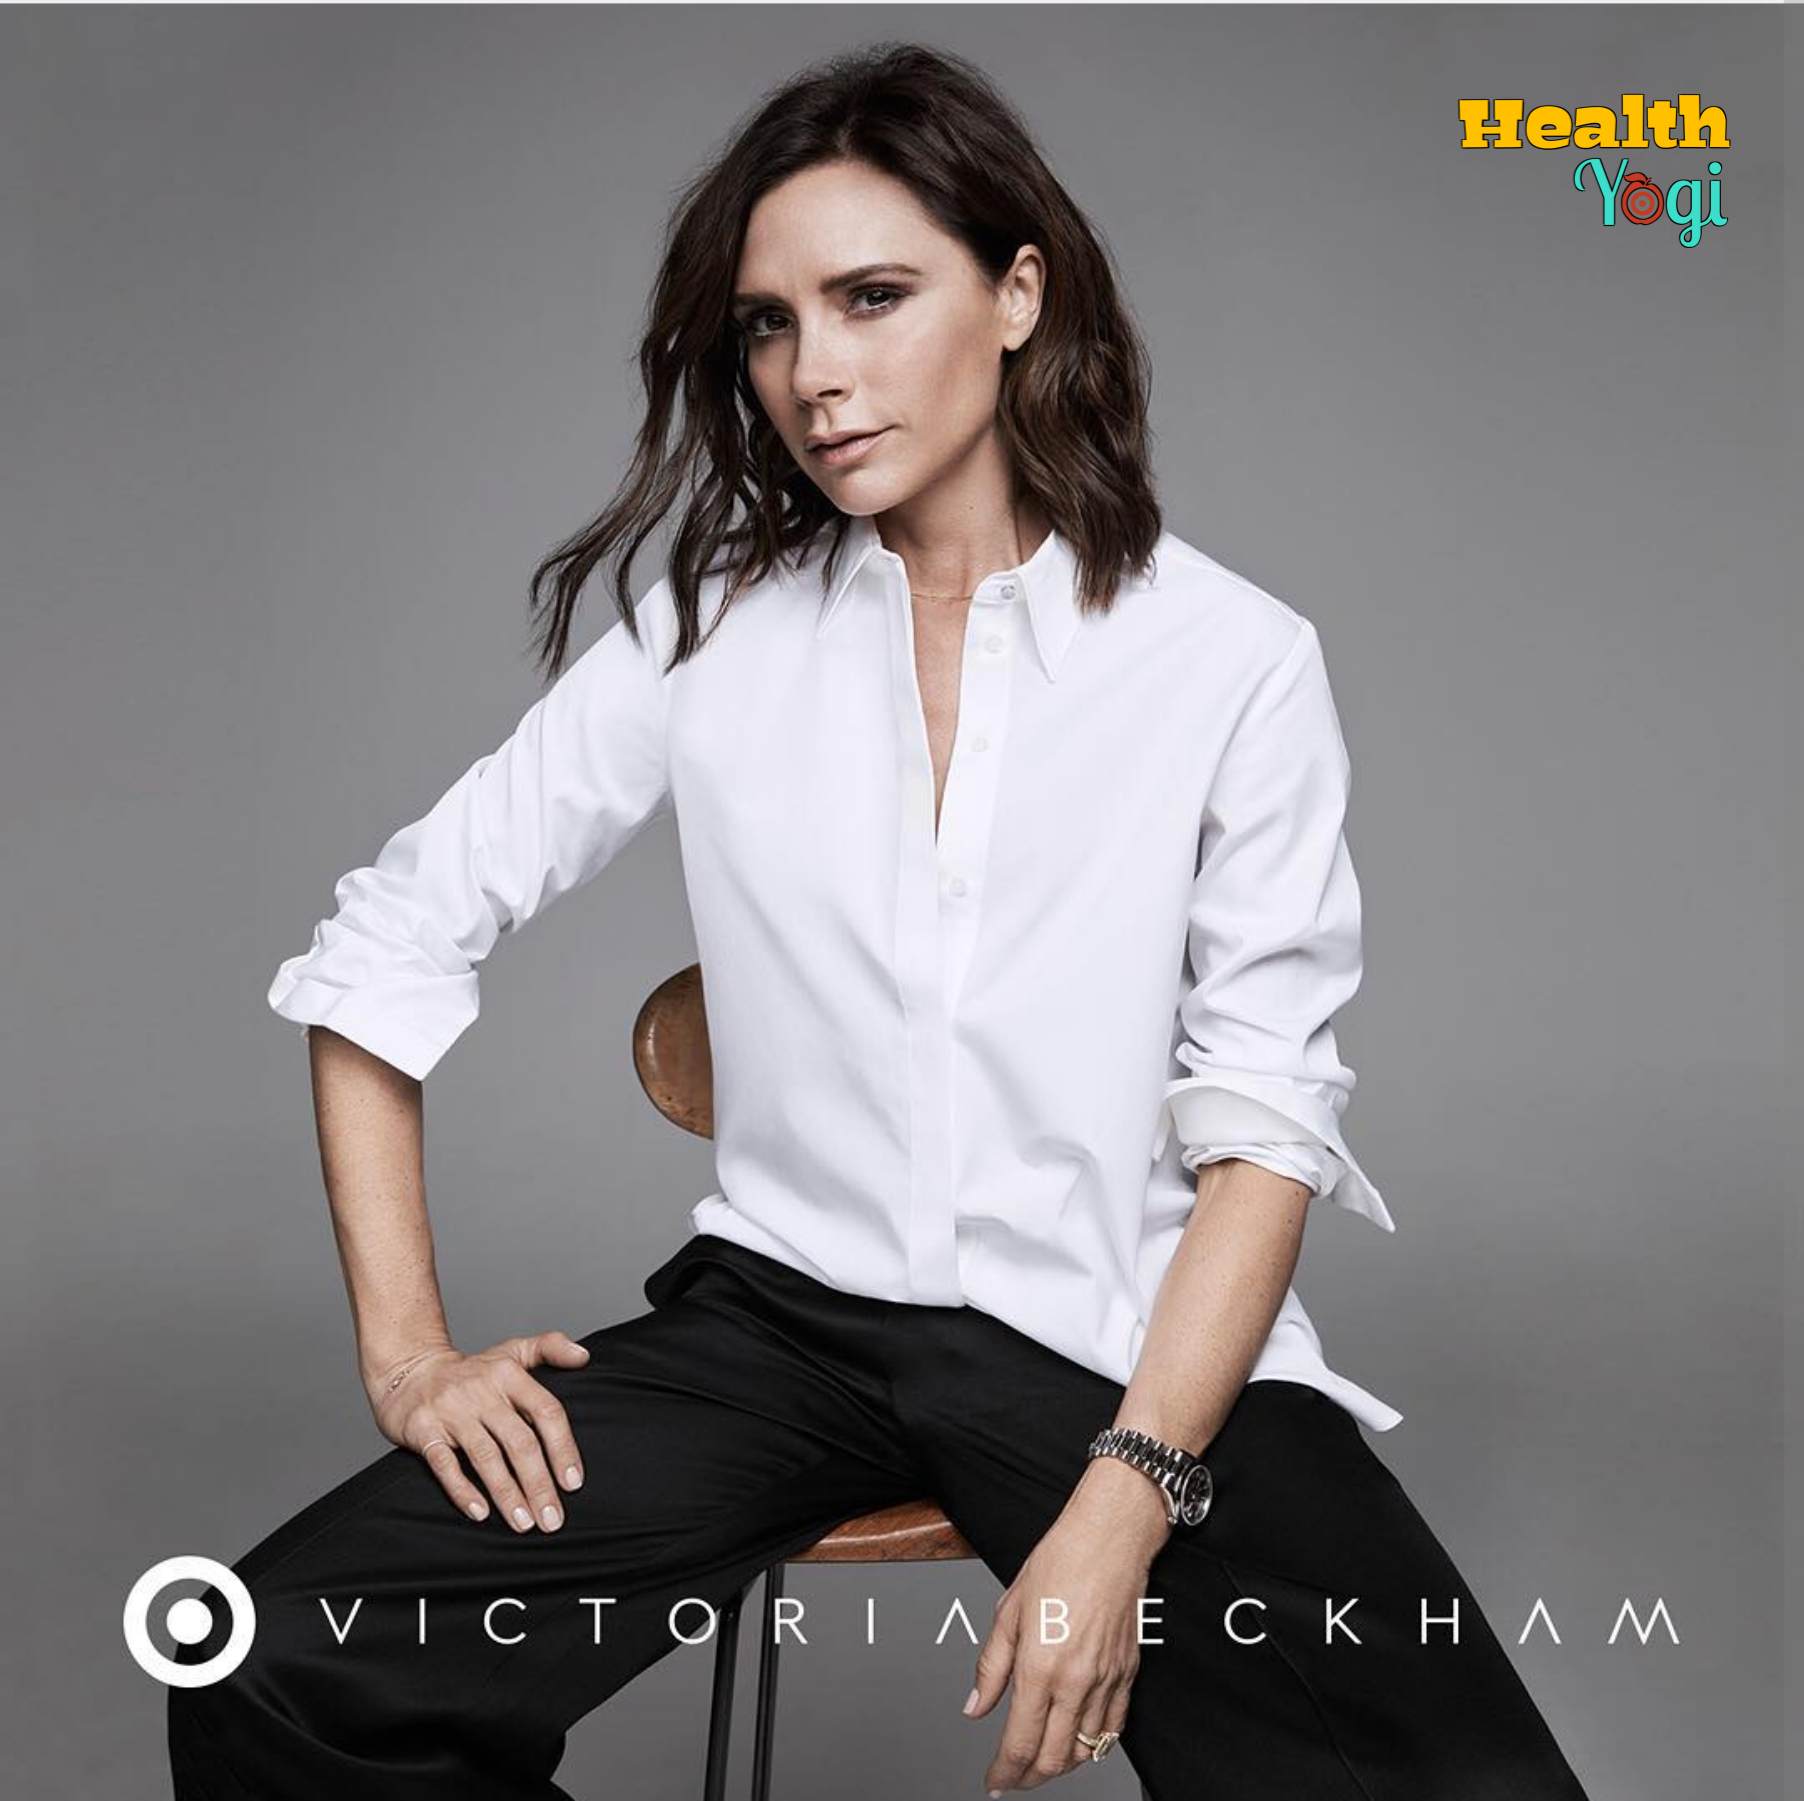 Victoria Beckham Diet Plan and Workout Routine